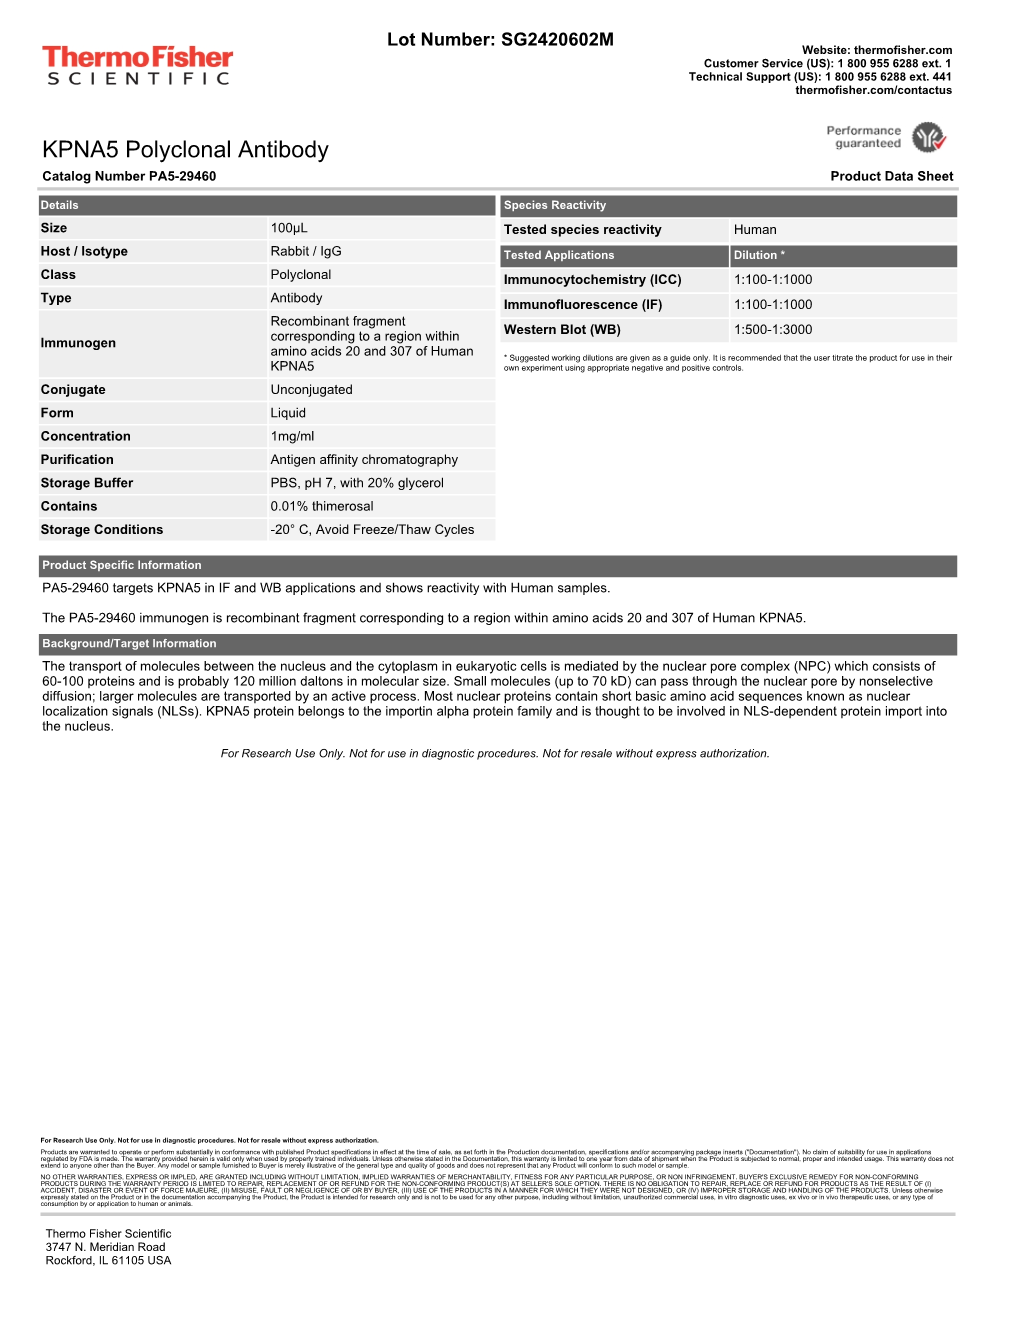 KPNA5 Polyclonal Antibody Catalog Number PA5-29460 Product Data Sheet